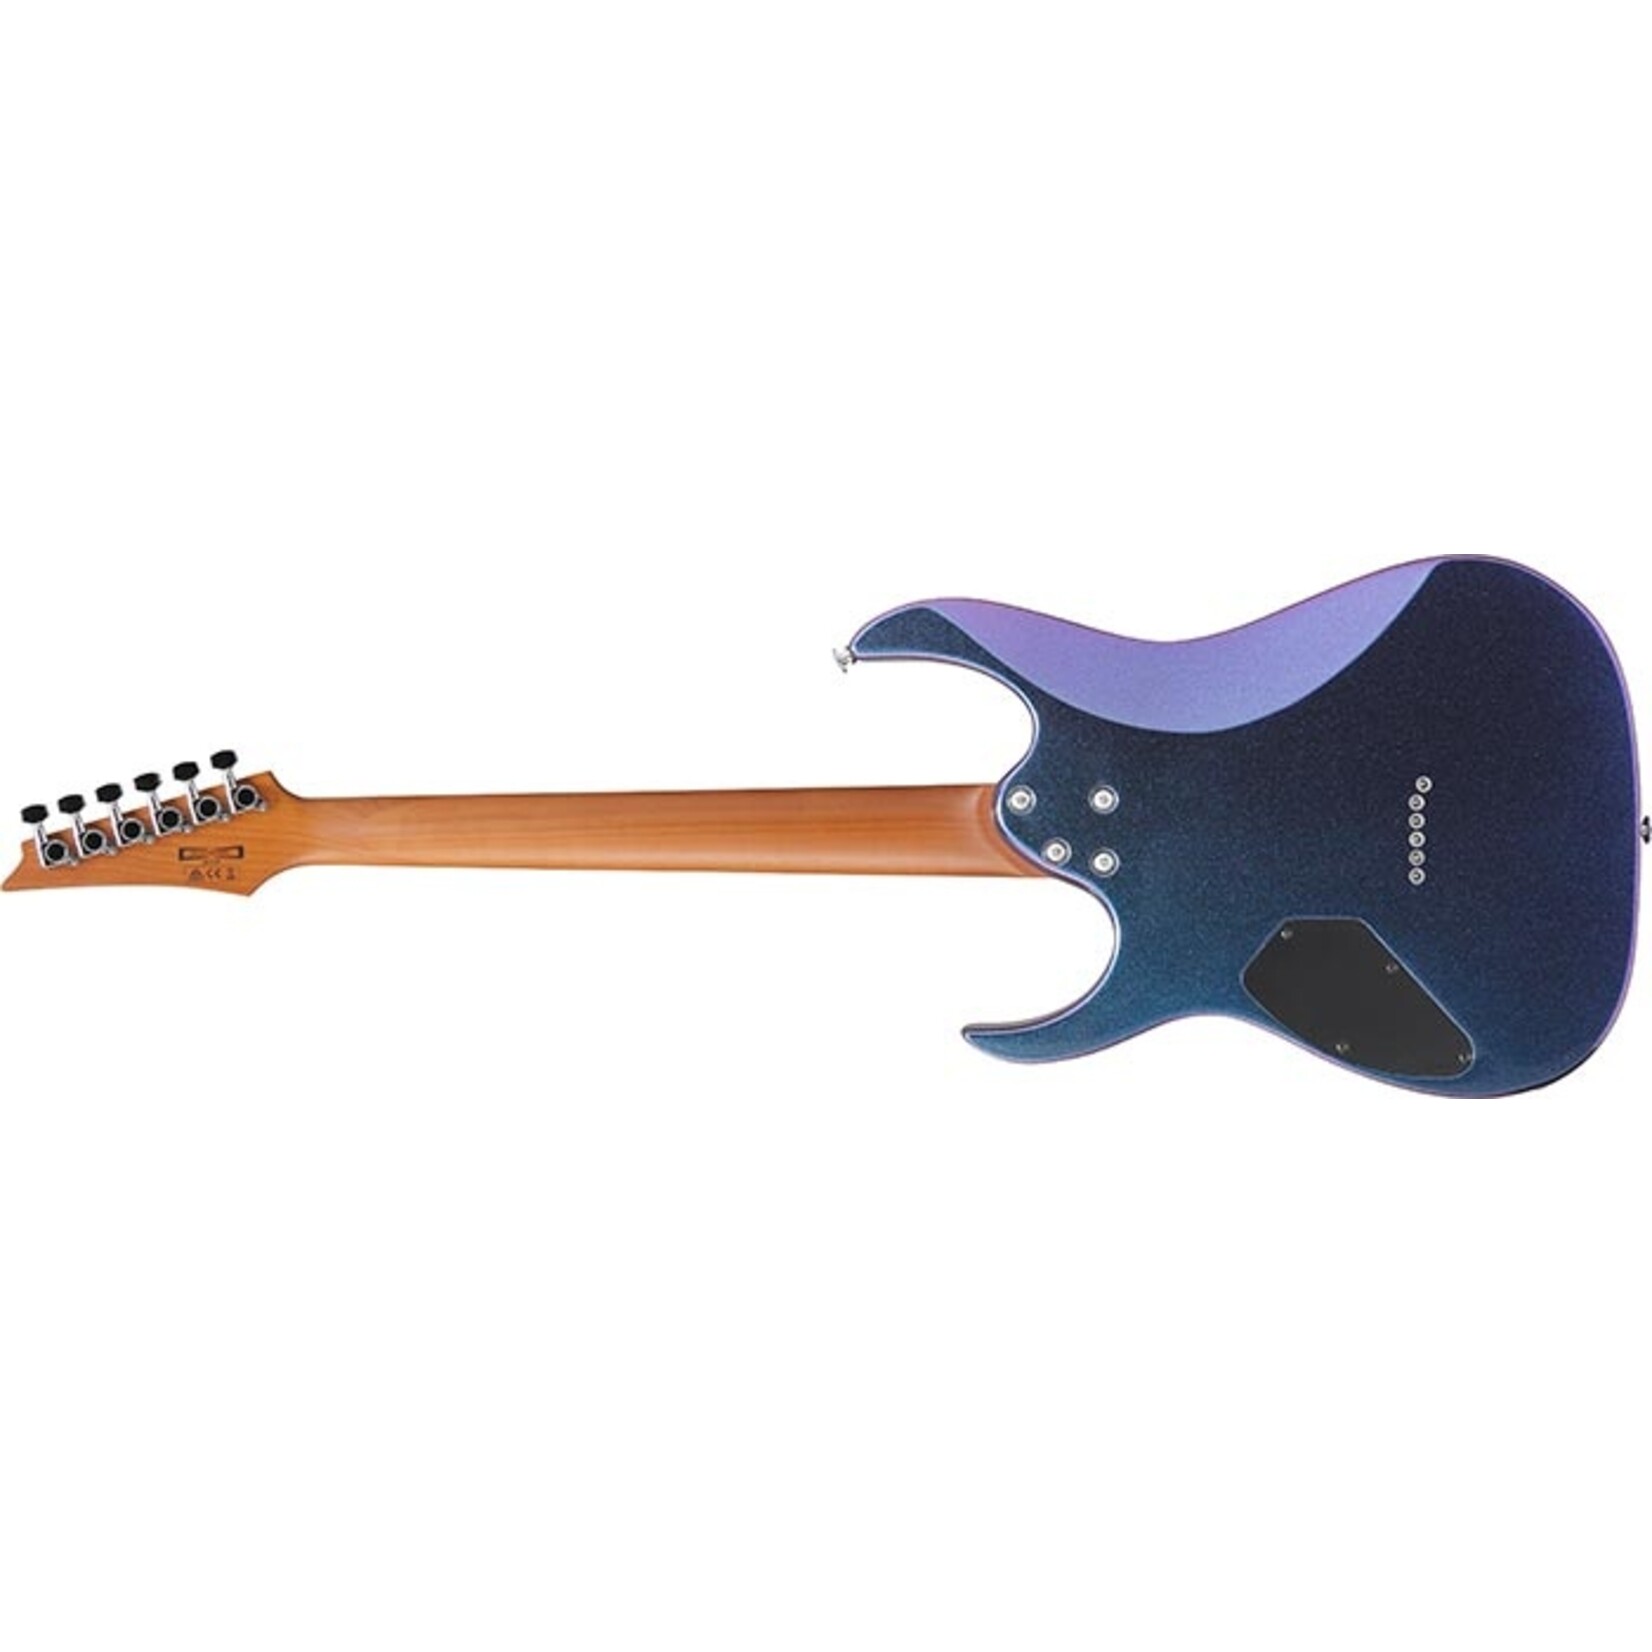 Ibanez GRG121SP Electric Guitar - Blue Metal Chameleon